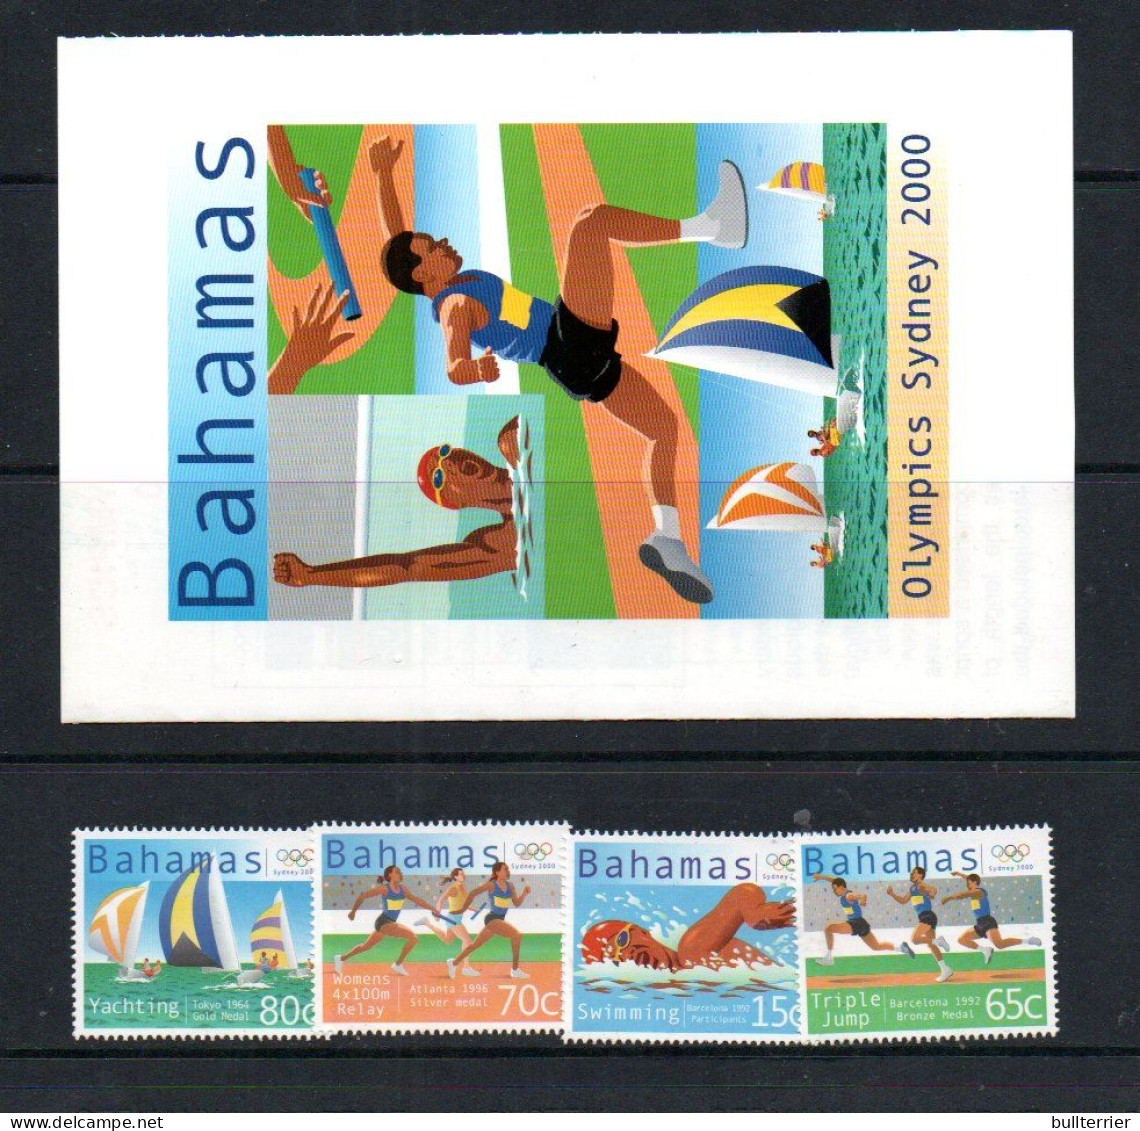 OLYMPICS -  BAHAMAS  - 2000-Sydney Olympics Set Of 4 + PUBLICITY Sheet  Mint Never Hinged - Verano 2000: Sydney